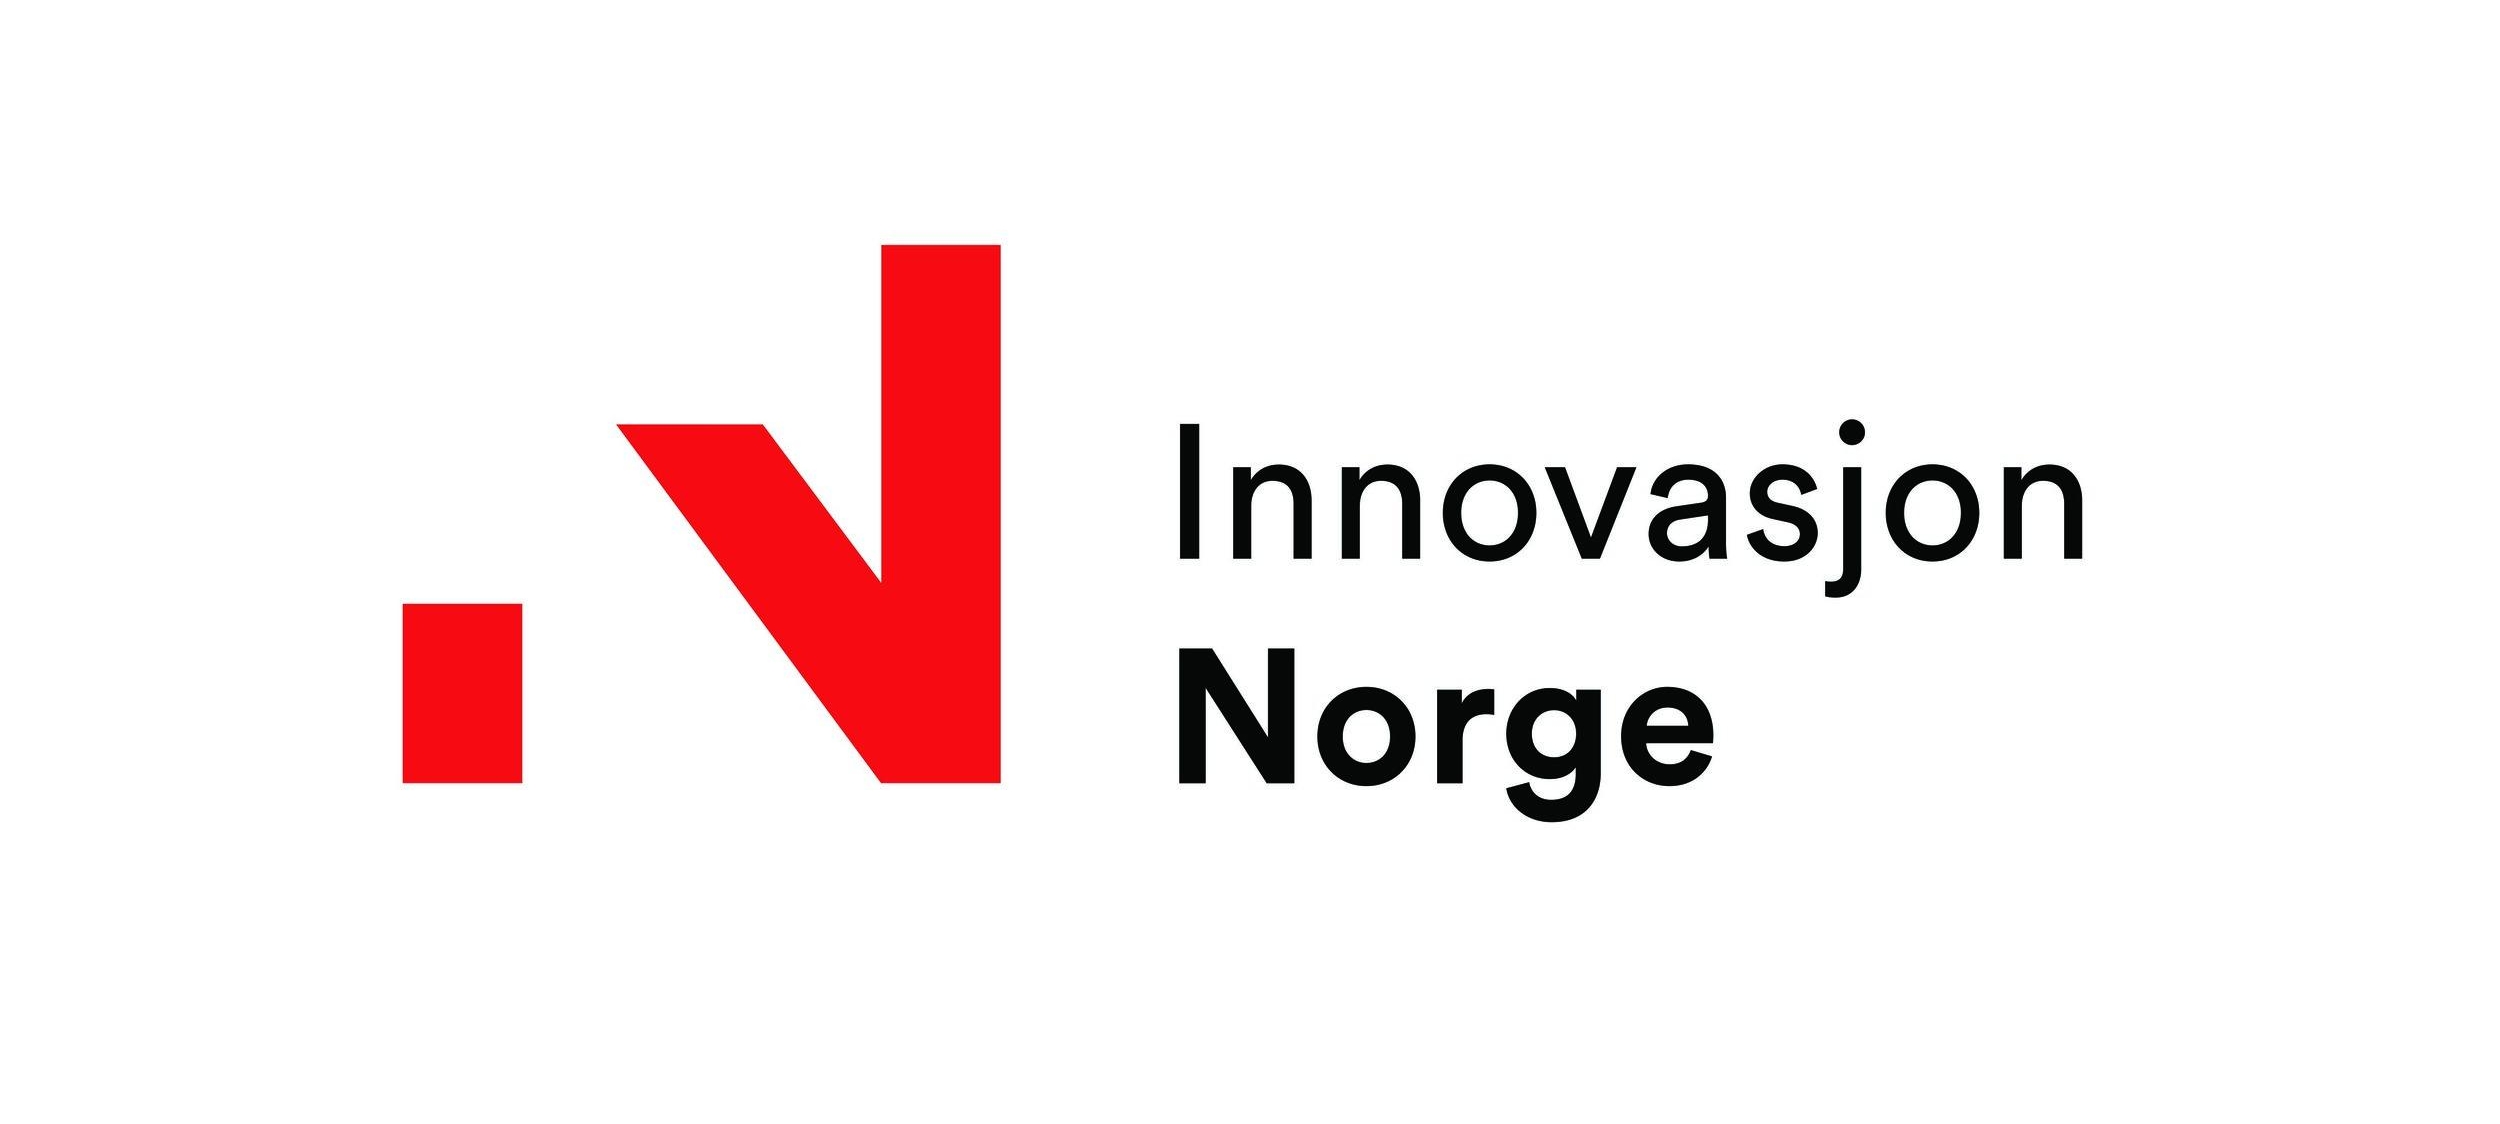 Innovasjon Norge logo.jpg